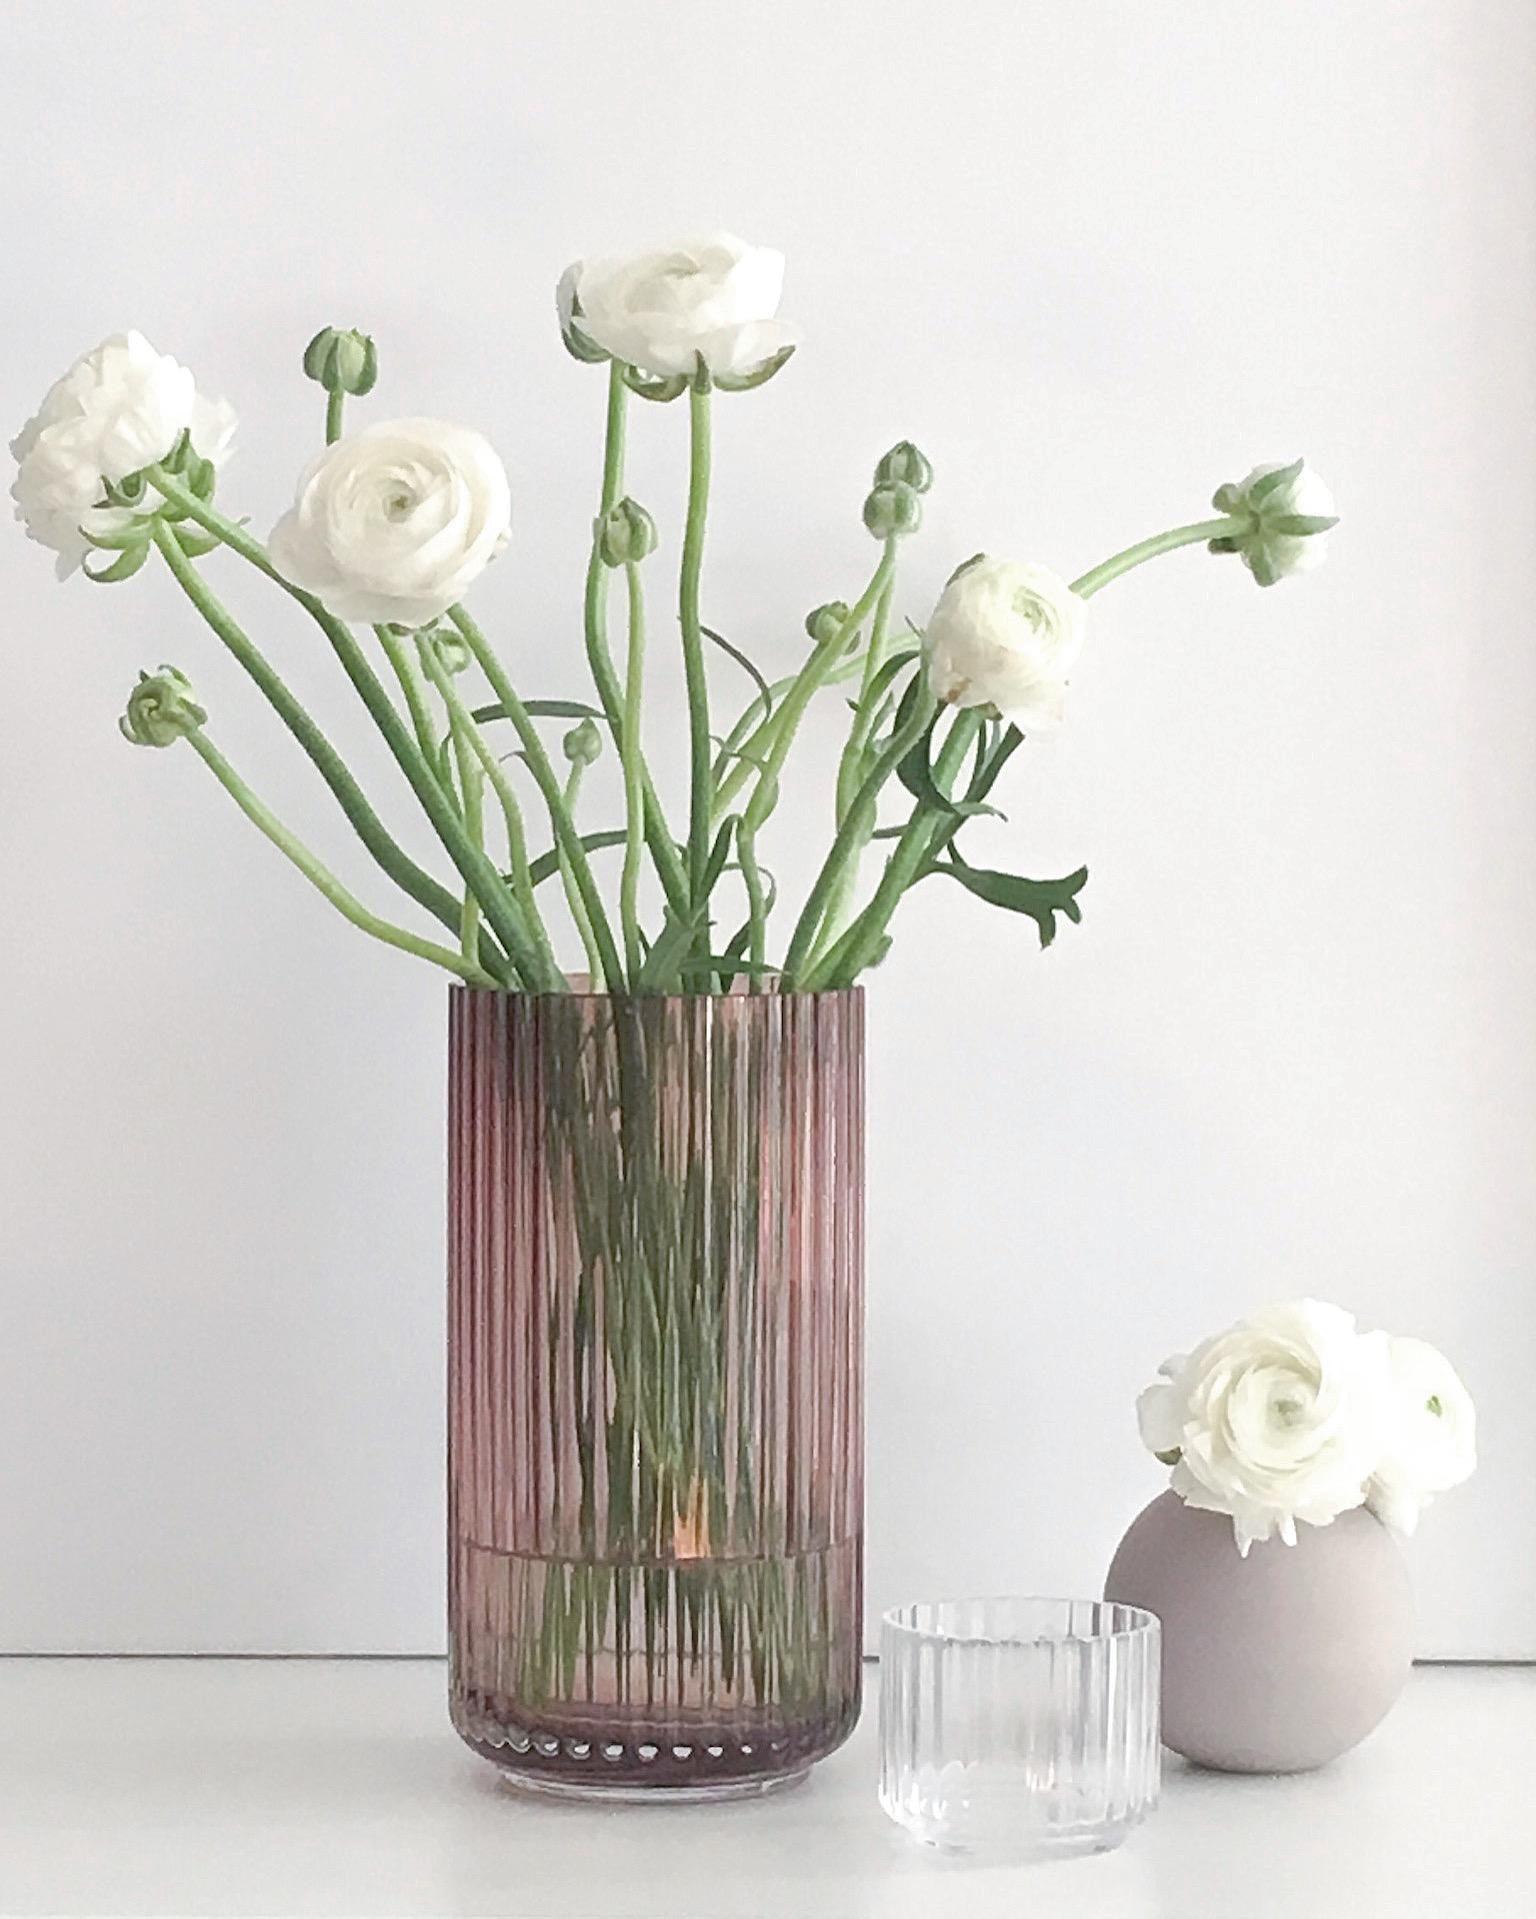 Verliebt in die wunderschöne Vase von #lyngby und in love mit #ranunkeln